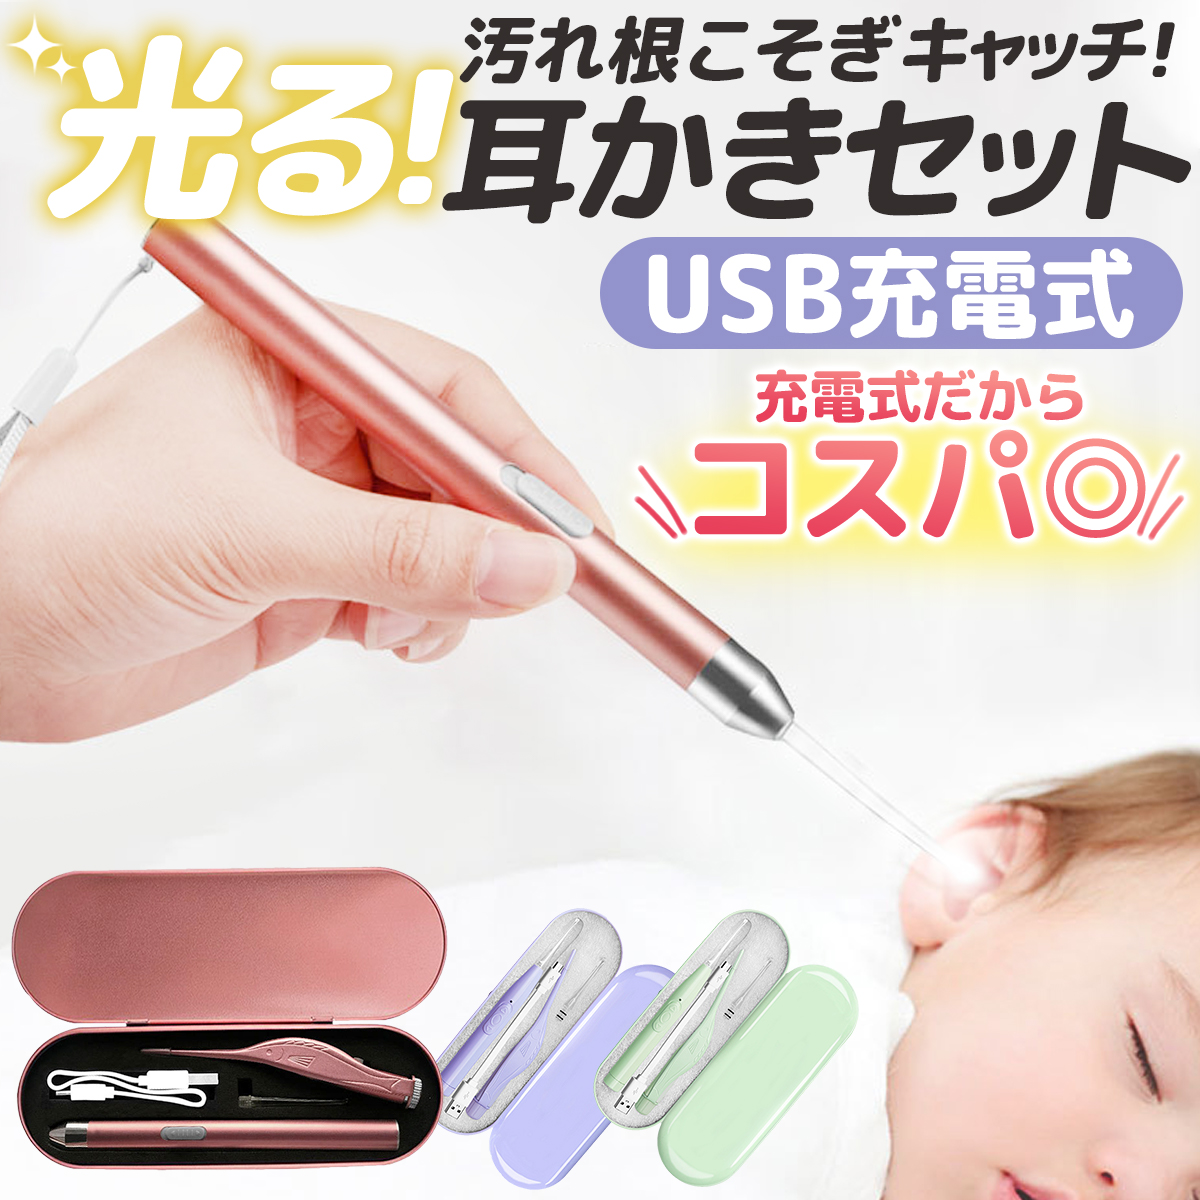 耳かき ライト 耳掃除 光る耳かき ピンセット ライト付き 子供 耳掻き 赤ちゃん usb :mimikaki:Reberiostore 通販  